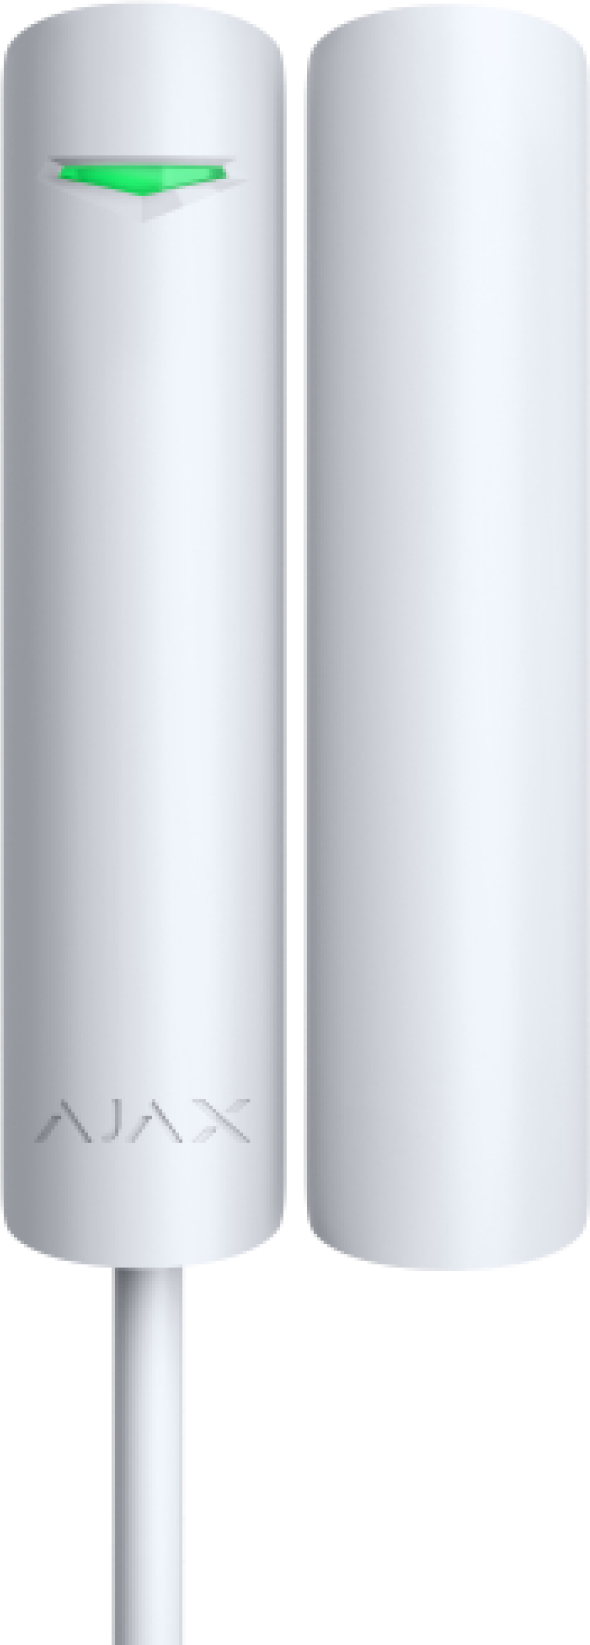 AJAX DoorProtect white - Fibra